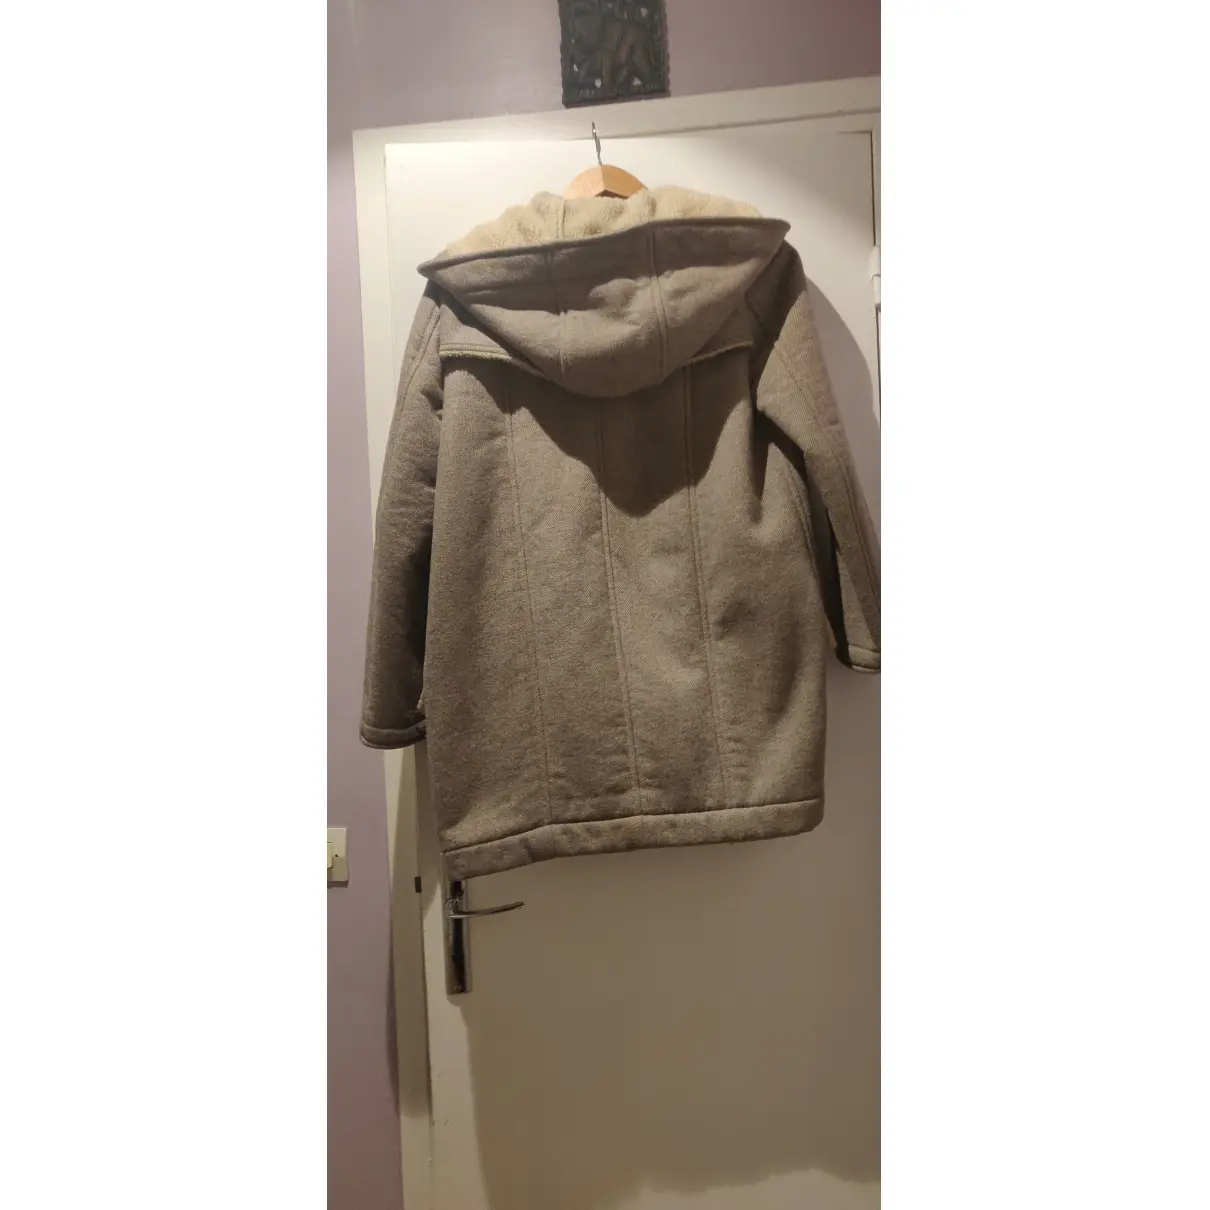 Buy The Kooples Fall Winter 2019 wool dufflecoat online